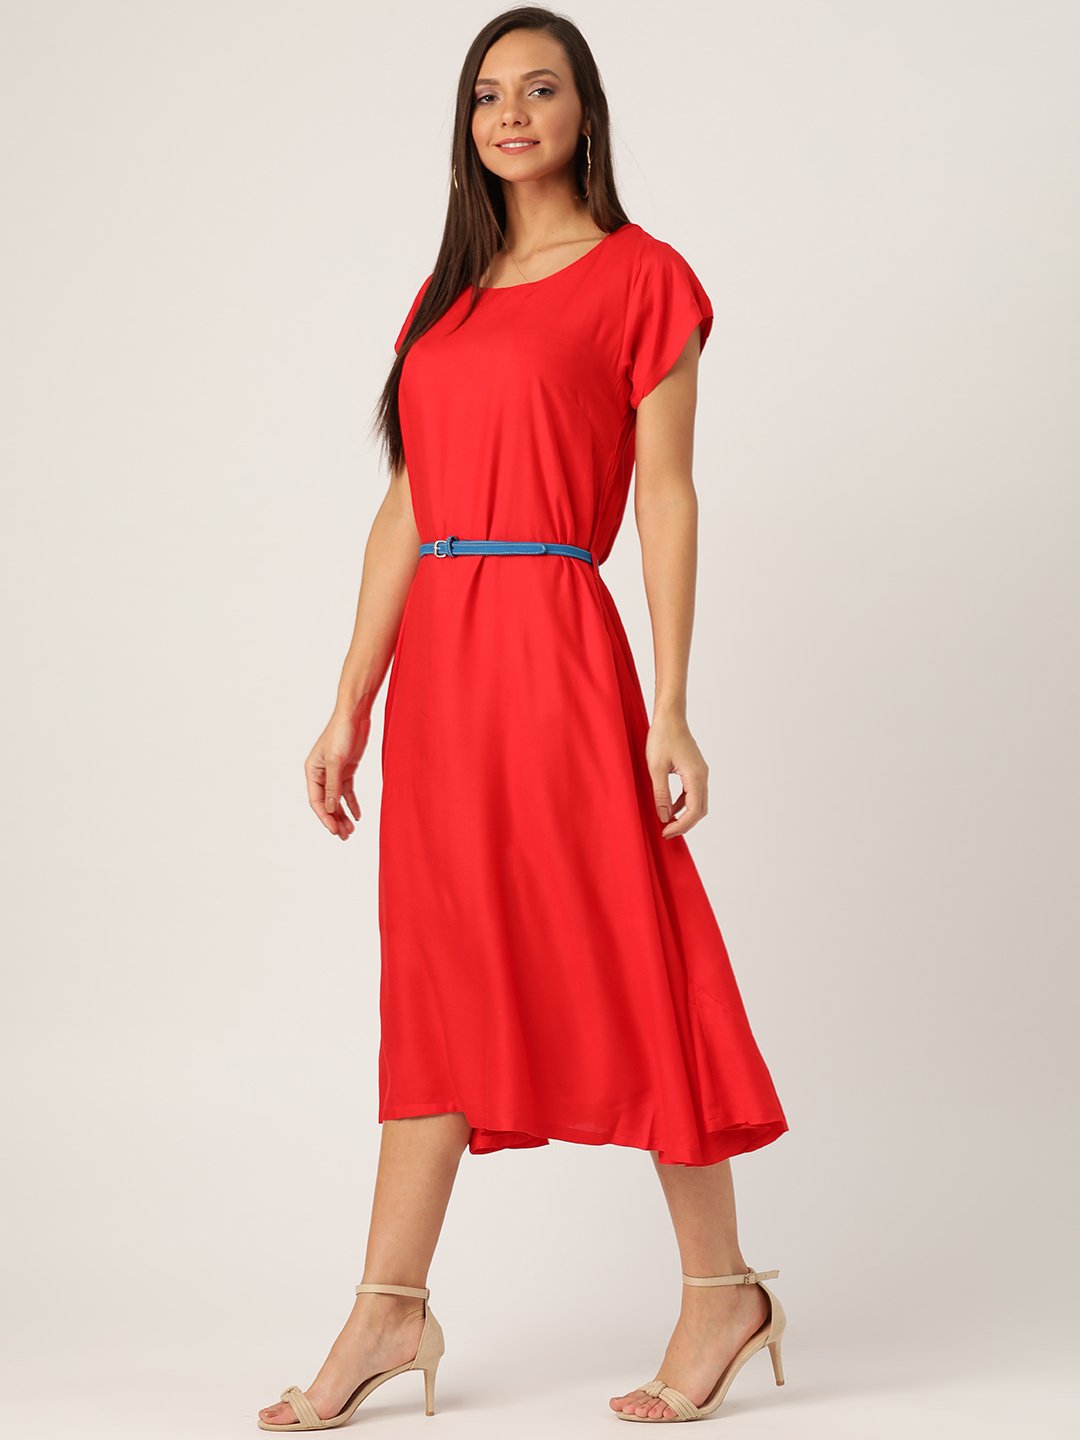 Red Dress Blue Belt